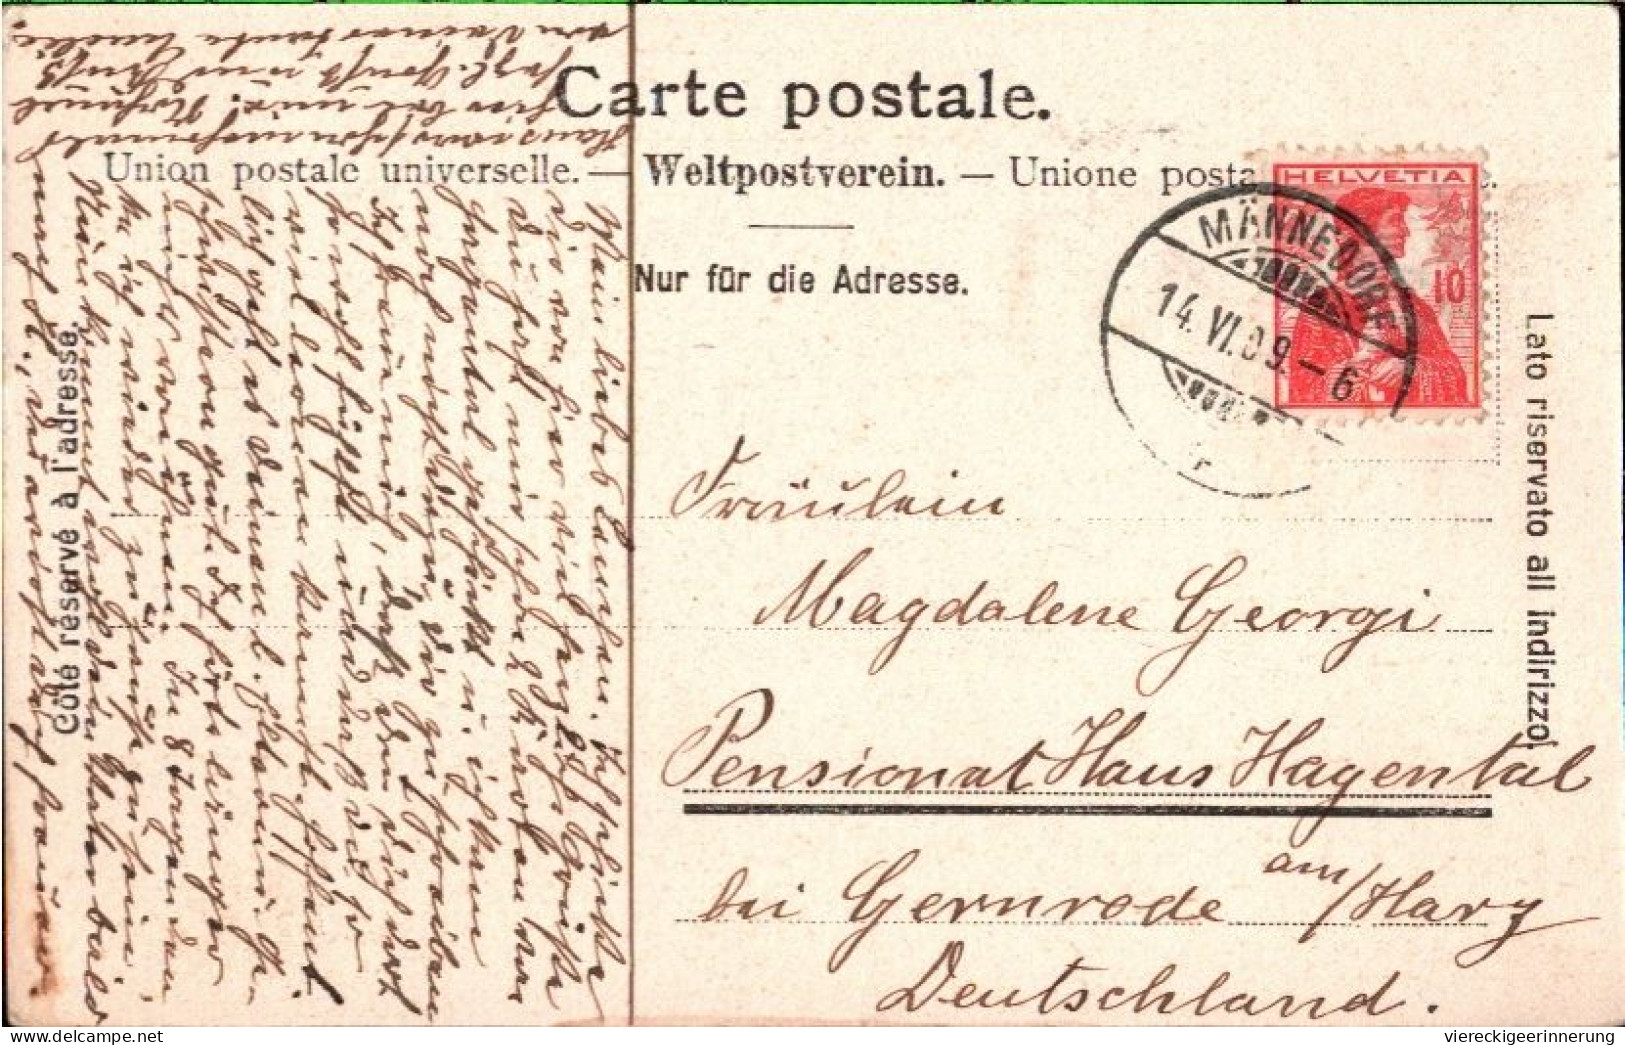 ! 1909 Alte Ansichtskarte Aus Männedorf, Kanton Zürich, Schweiz, Eisenbahnstrecke - Männedorf